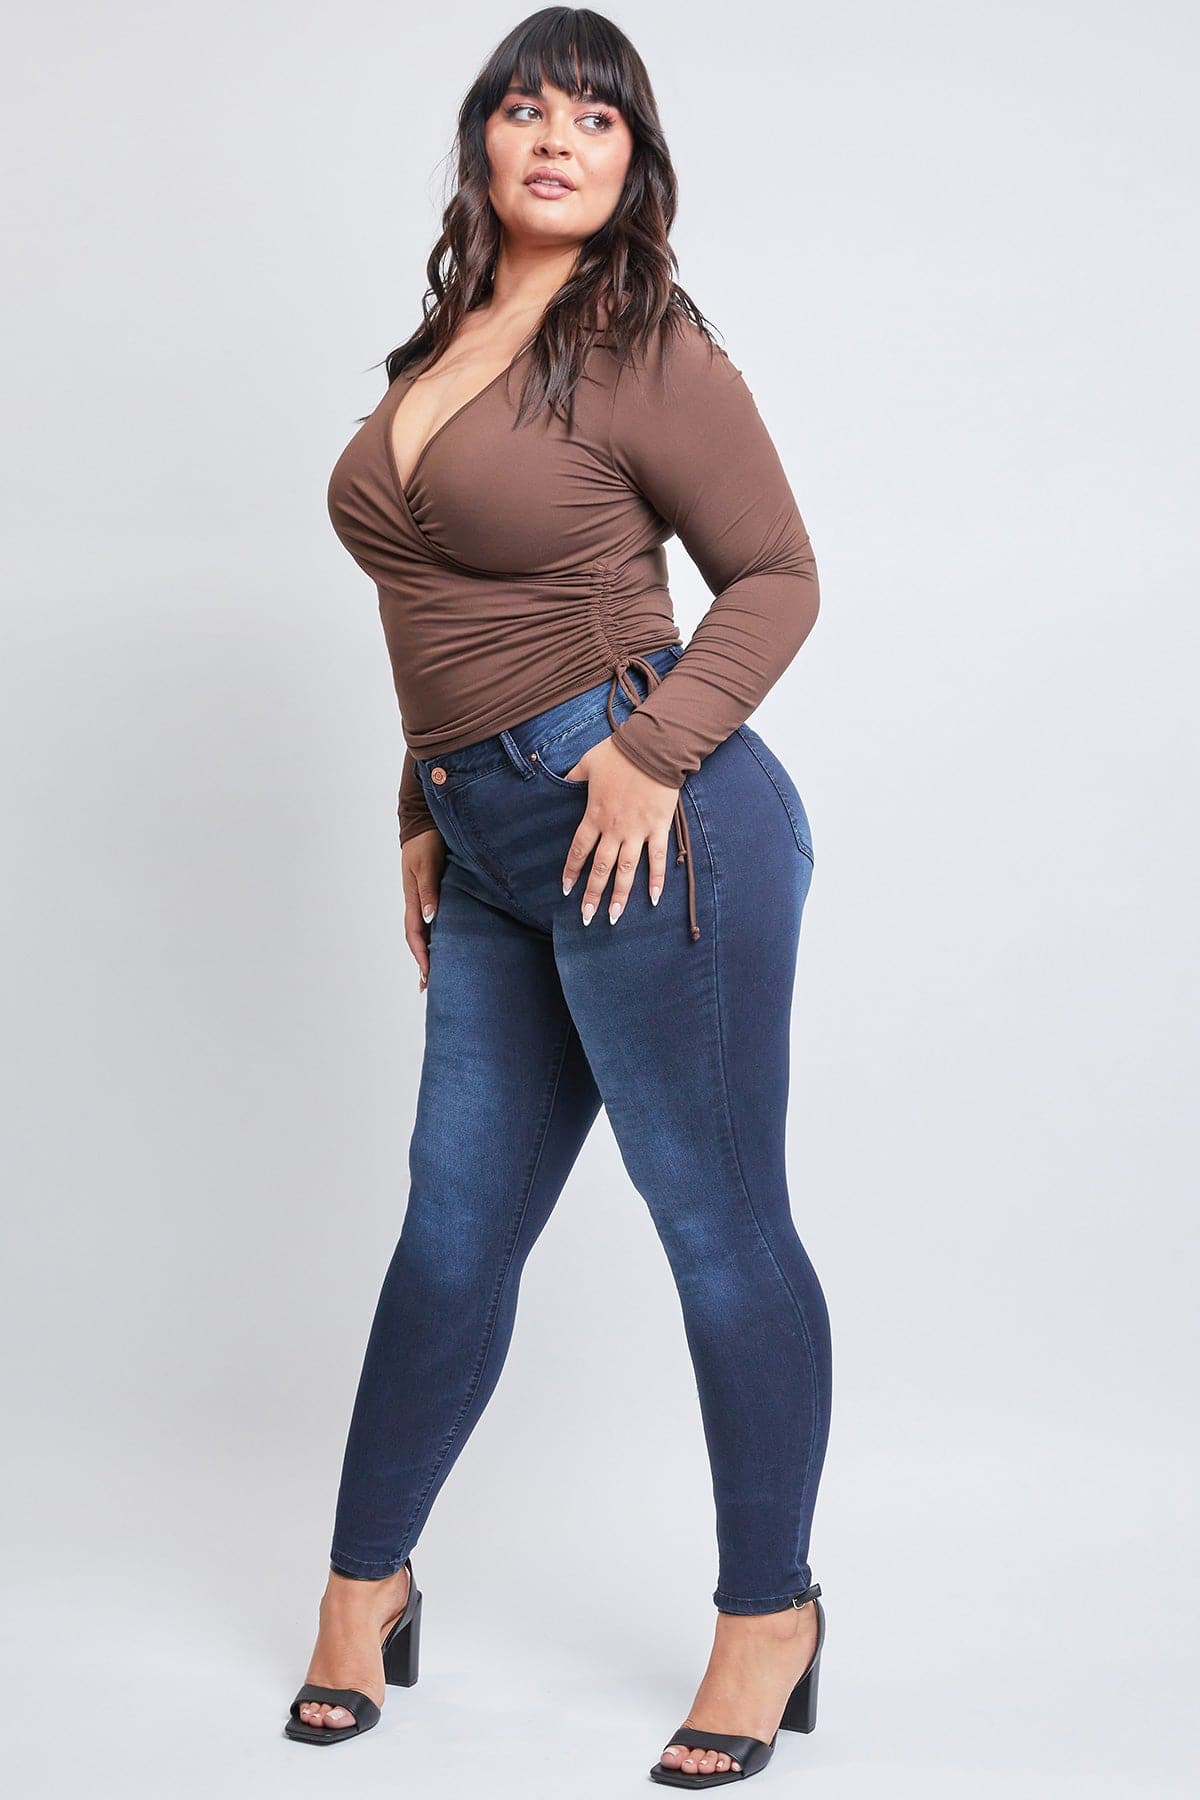 Plus Size Women's Essential HyperDenim Skinny Jeans from YMI – YMI JEANS